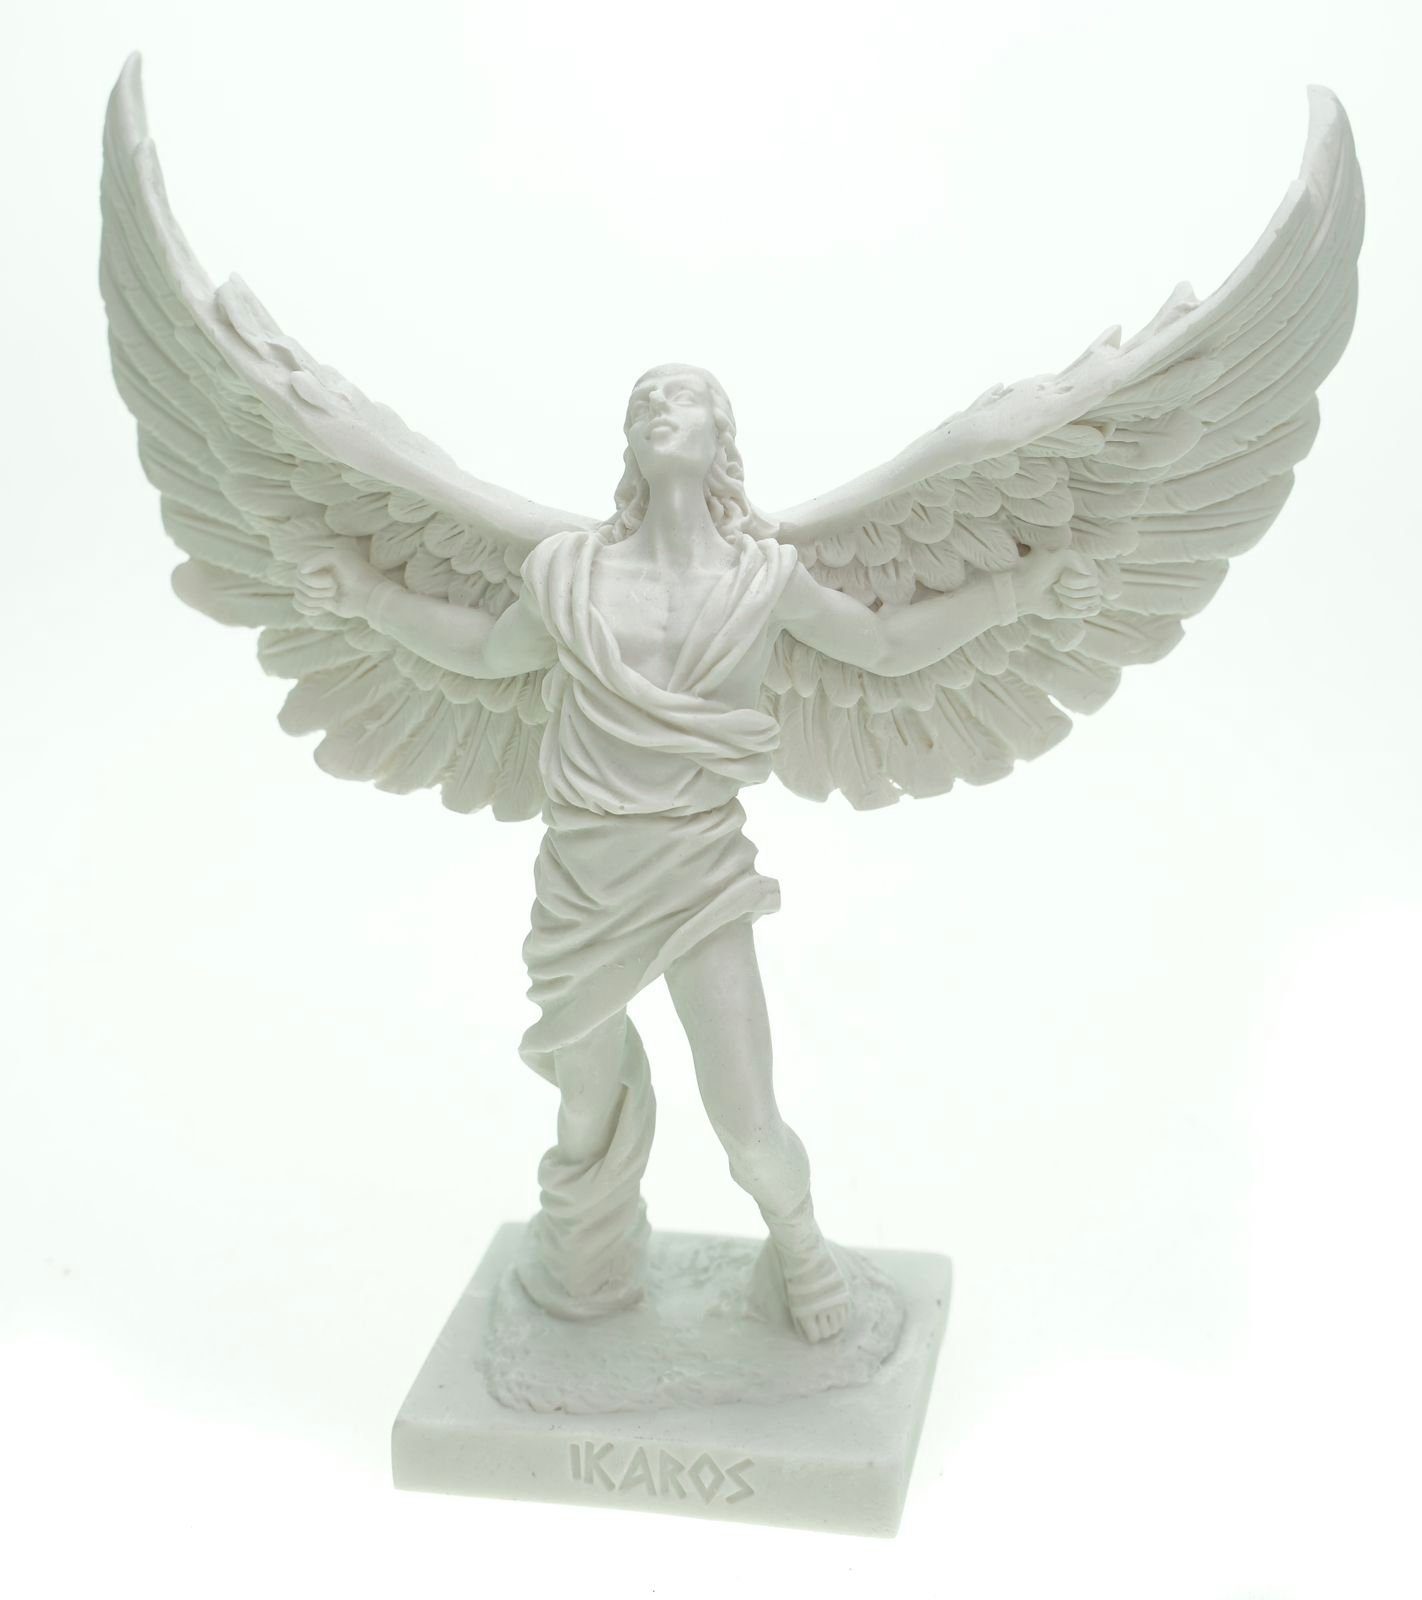 Kremers Schatzkiste Dekofigur Alabaster Figur Ikarus Skulptur 16 cm